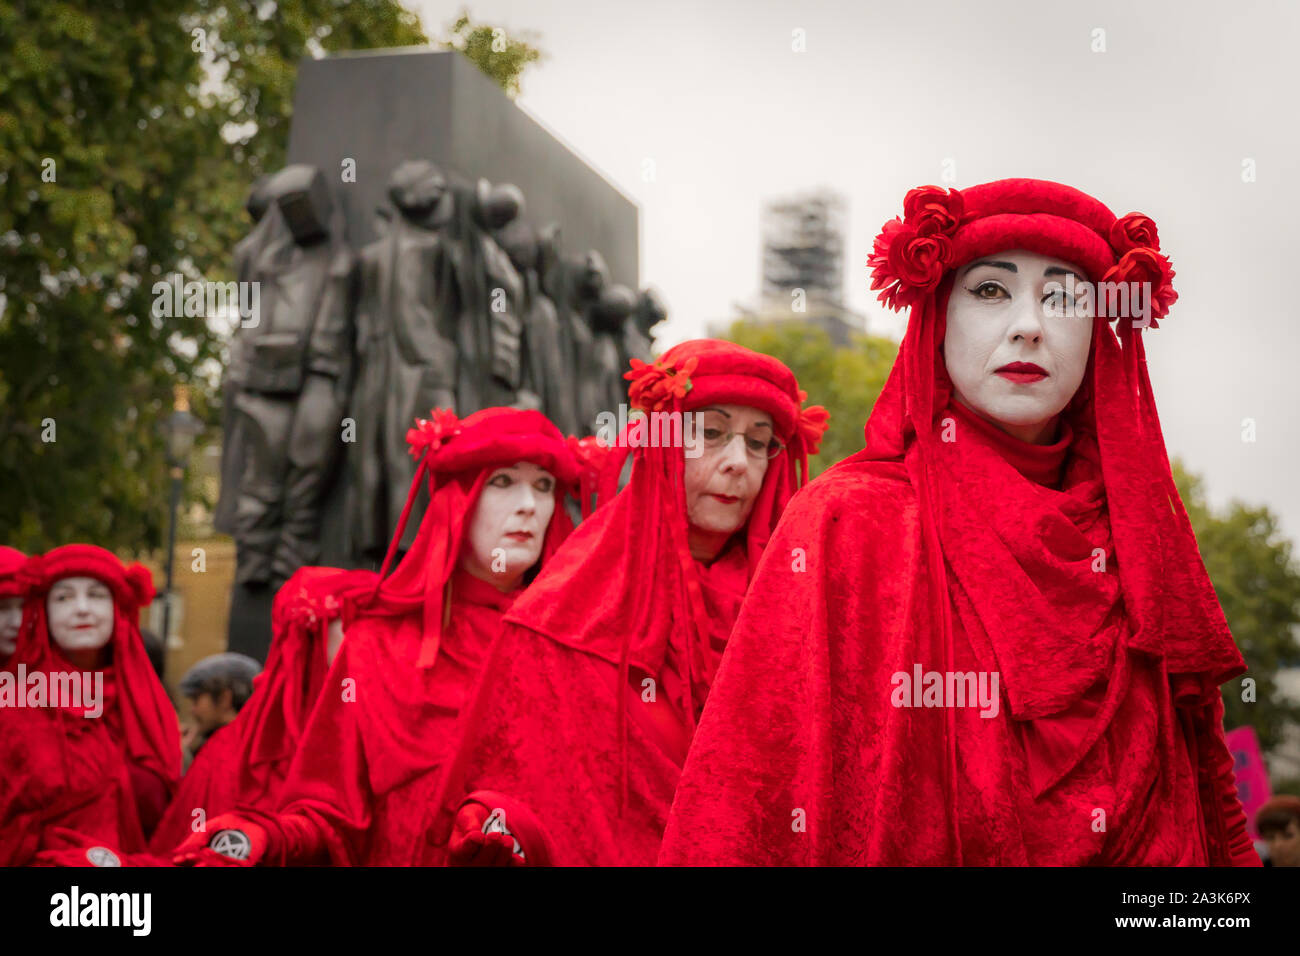 Whitehall, Londres, Royaume-Uni. - 7 octobre 2019 - XR ptotests - rouge 'Brigade' art group, au cours d'une performance de rue, 'la femme de guerre Warld II' en arrière-plan Banque D'Images